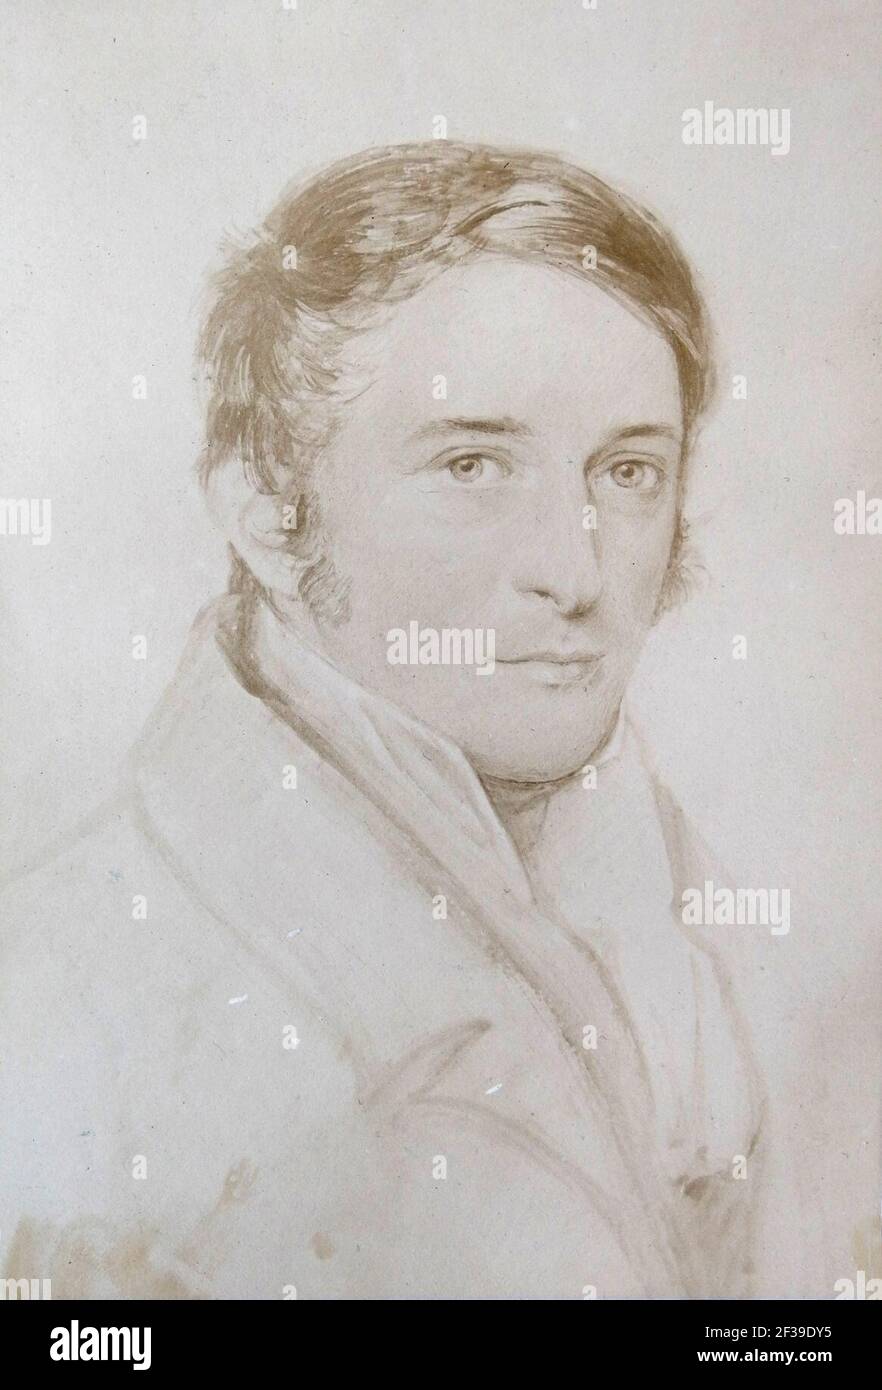 Professor von Martius (Carl Friedrich Philipp von Martius 1794-1868), painter August Grahl. Stock Photo